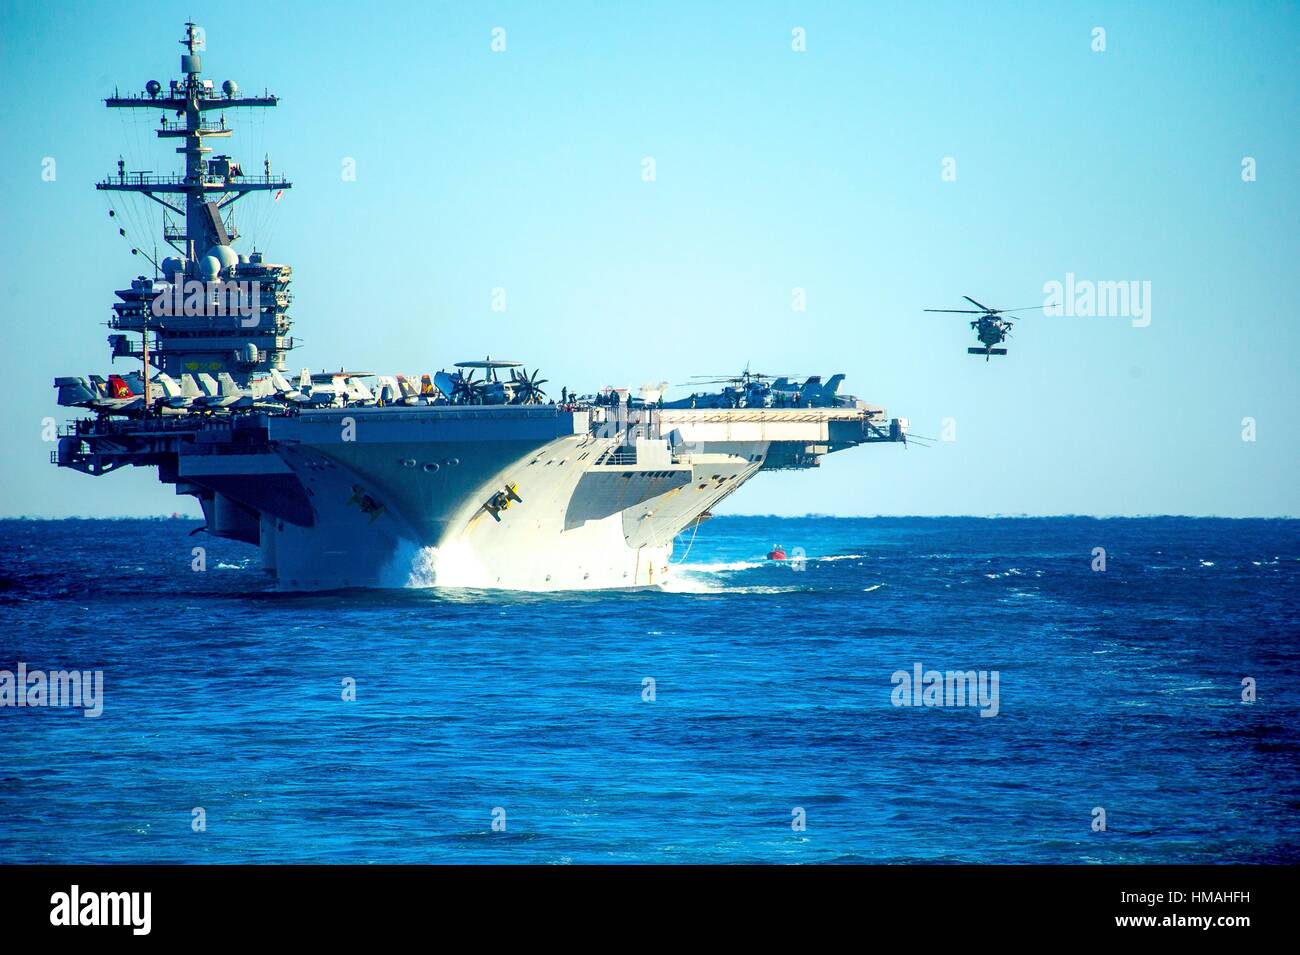 L'océan Atlantique (déc. 13, 2013) helicopters se préparer à atterrir sur le pont du USS George h. w. bush (CVN 77) pendant une simulation de transit du détroit. Banque D'Images